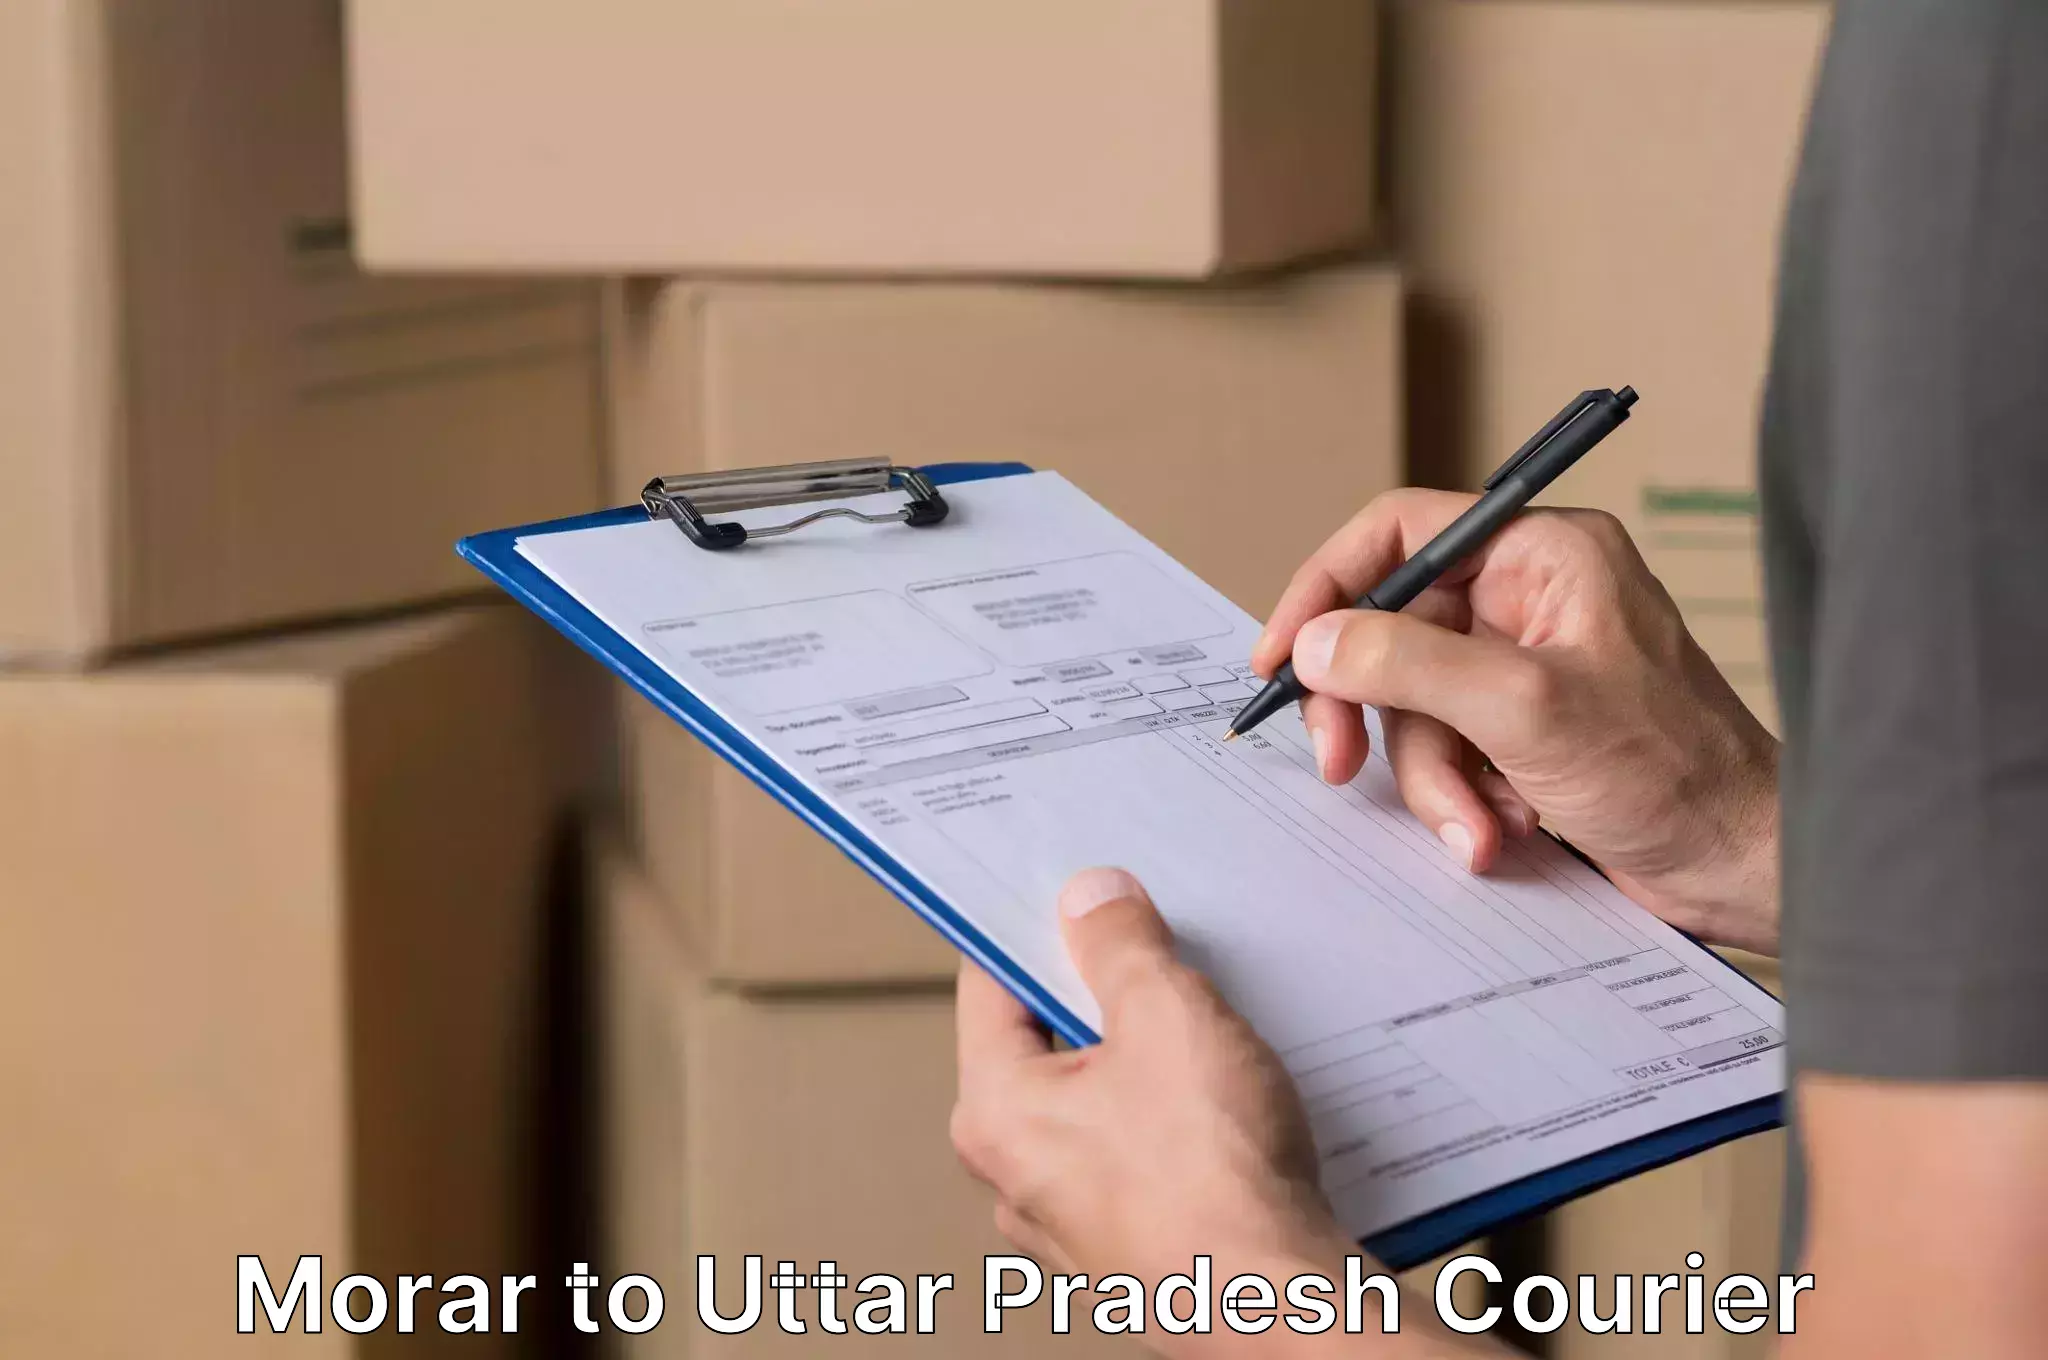 Efficient relocation services Morar to Uttar Pradesh